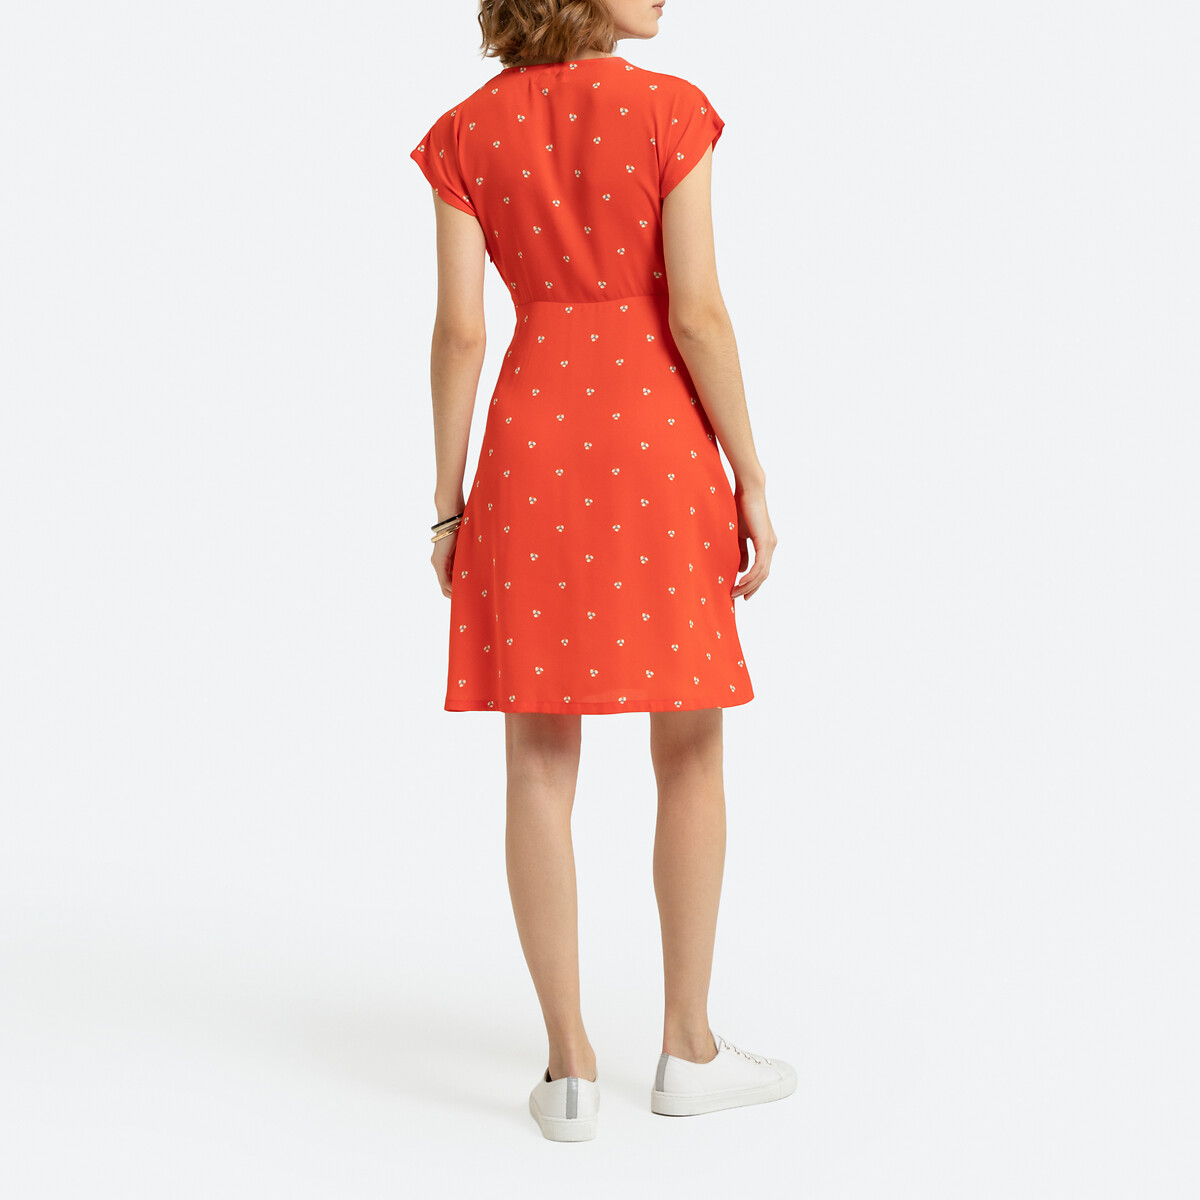 Платье LaRedoute Без рукавов с цветочным рисунком 44 (FR) - 50 (RUS) красный, размер 44 (FR) - 50 (RUS) Без рукавов с цветочным рисунком 44 (FR) - 50 (RUS) красный - фото 4